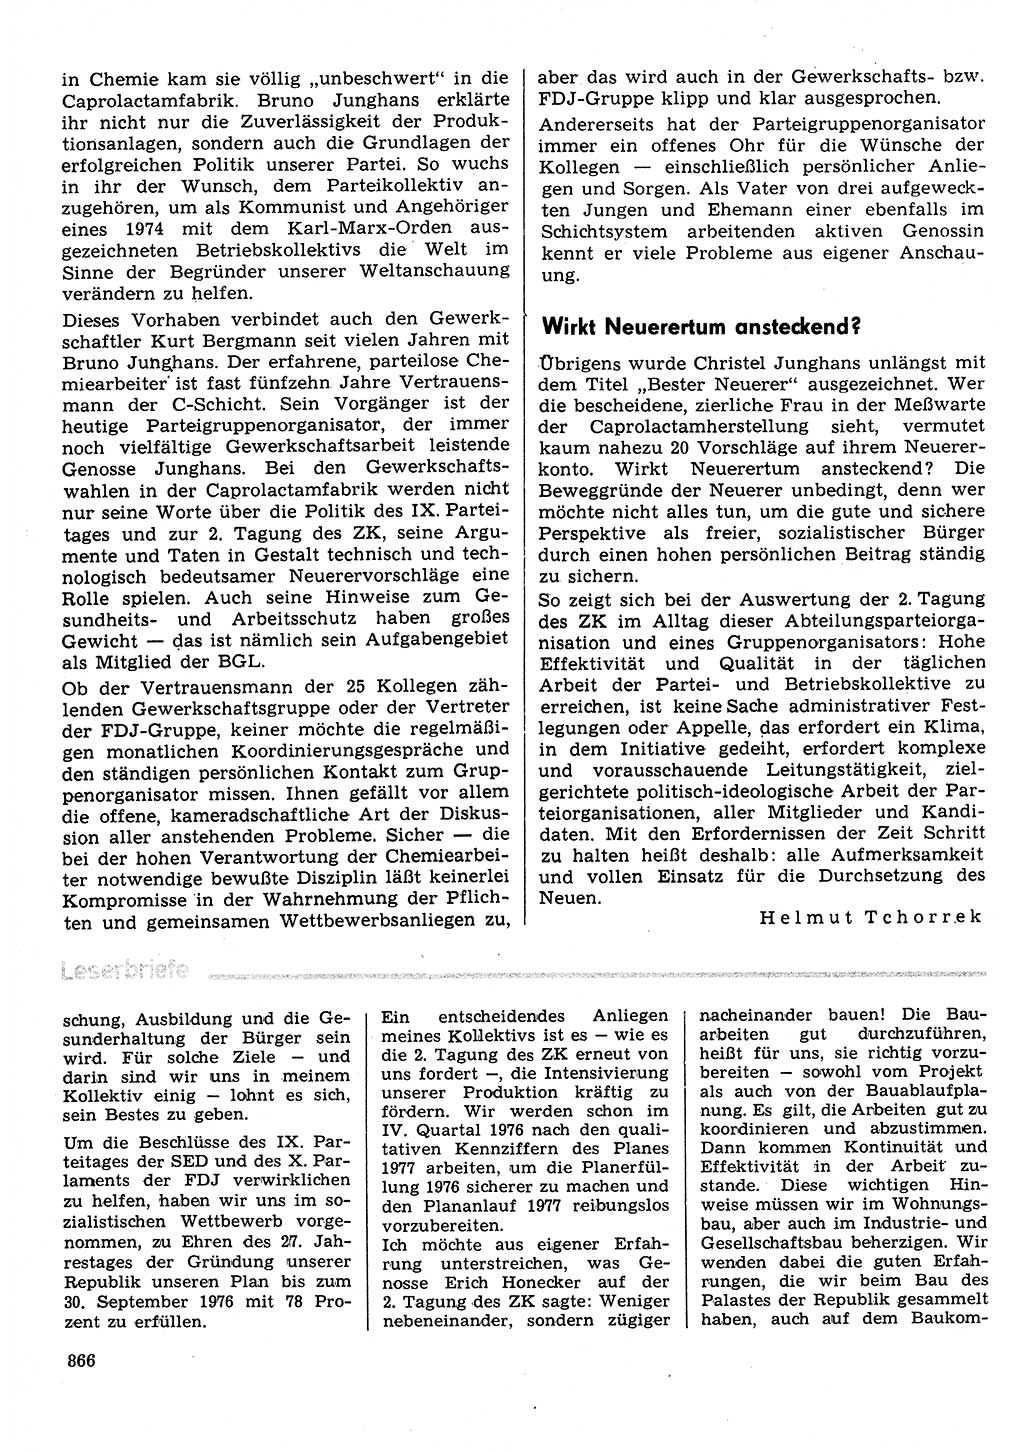 Neuer Weg (NW), Organ des Zentralkomitees (ZK) der SED (Sozialistische Einheitspartei Deutschlands) für Fragen des Parteilebens, 31. Jahrgang [Deutsche Demokratische Republik (DDR)] 1976, Seite 866 (NW ZK SED DDR 1976, S. 866)